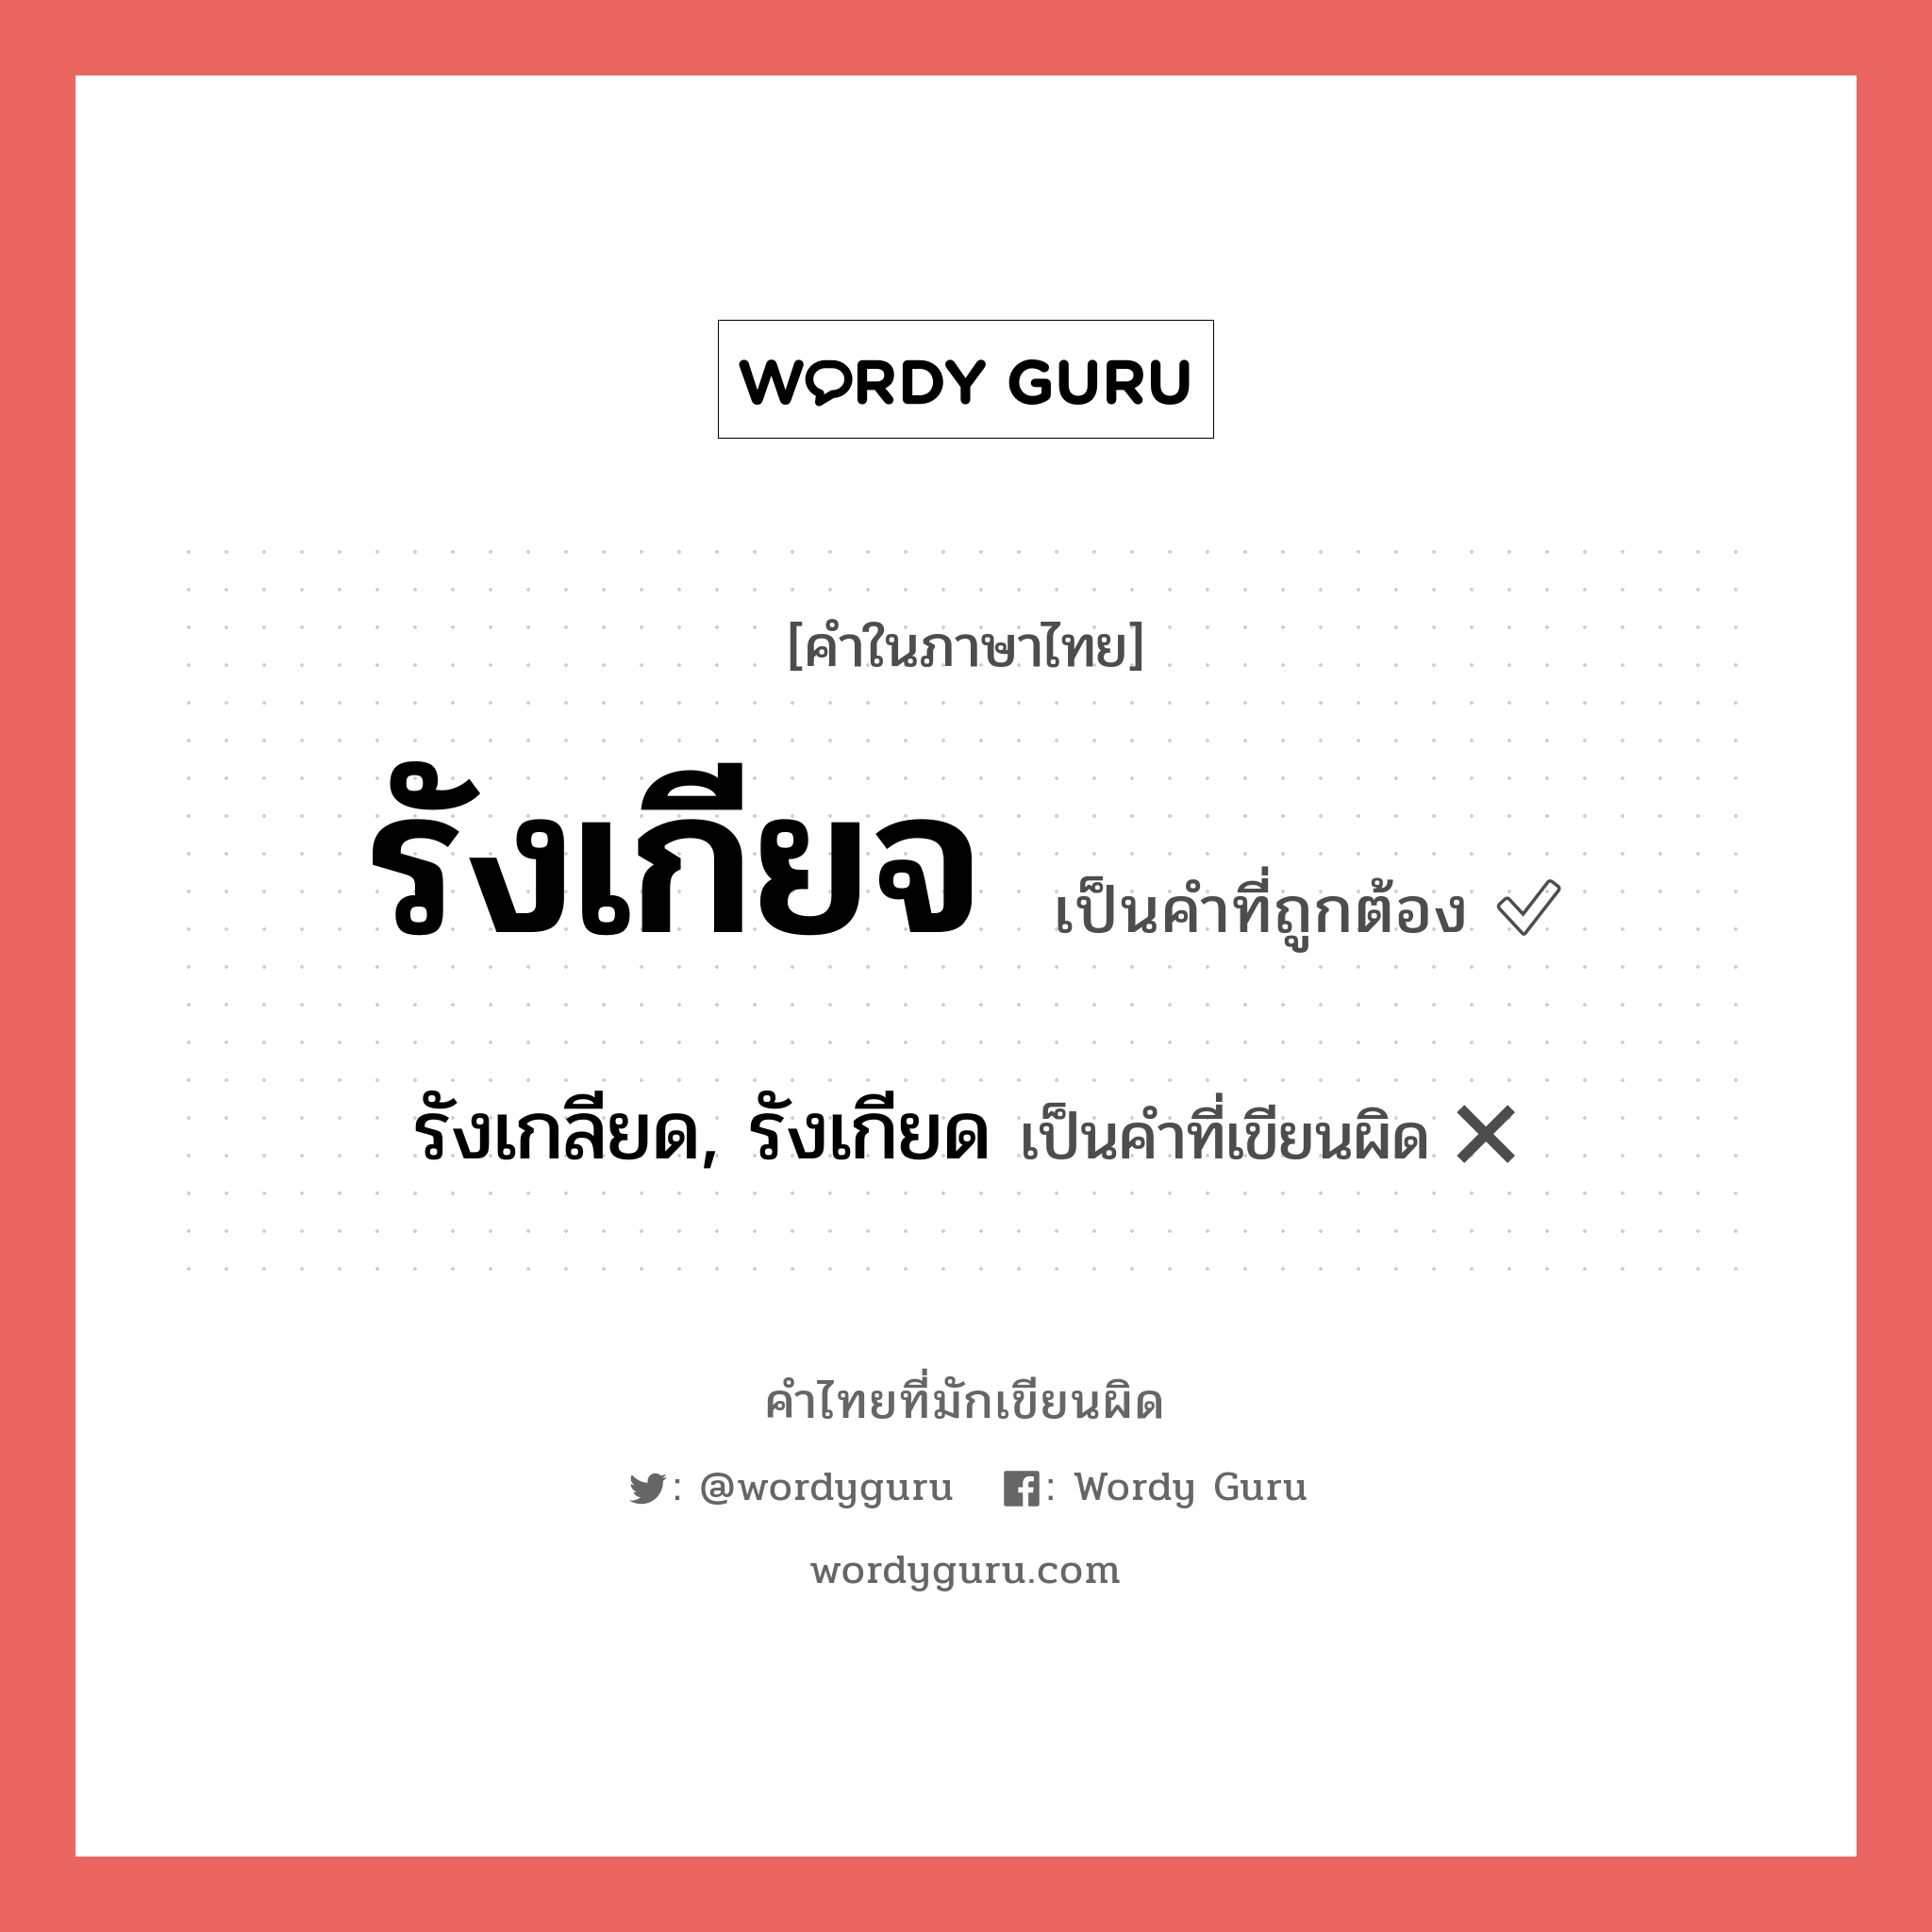 รังเกลียด, รังเกียด หรือ รังเกียจ คำไหนเขียนถูก?, คำในภาษาไทยที่มักเขียนผิด รังเกลียด, รังเกียด คำที่ผิด ❌ รังเกียจ